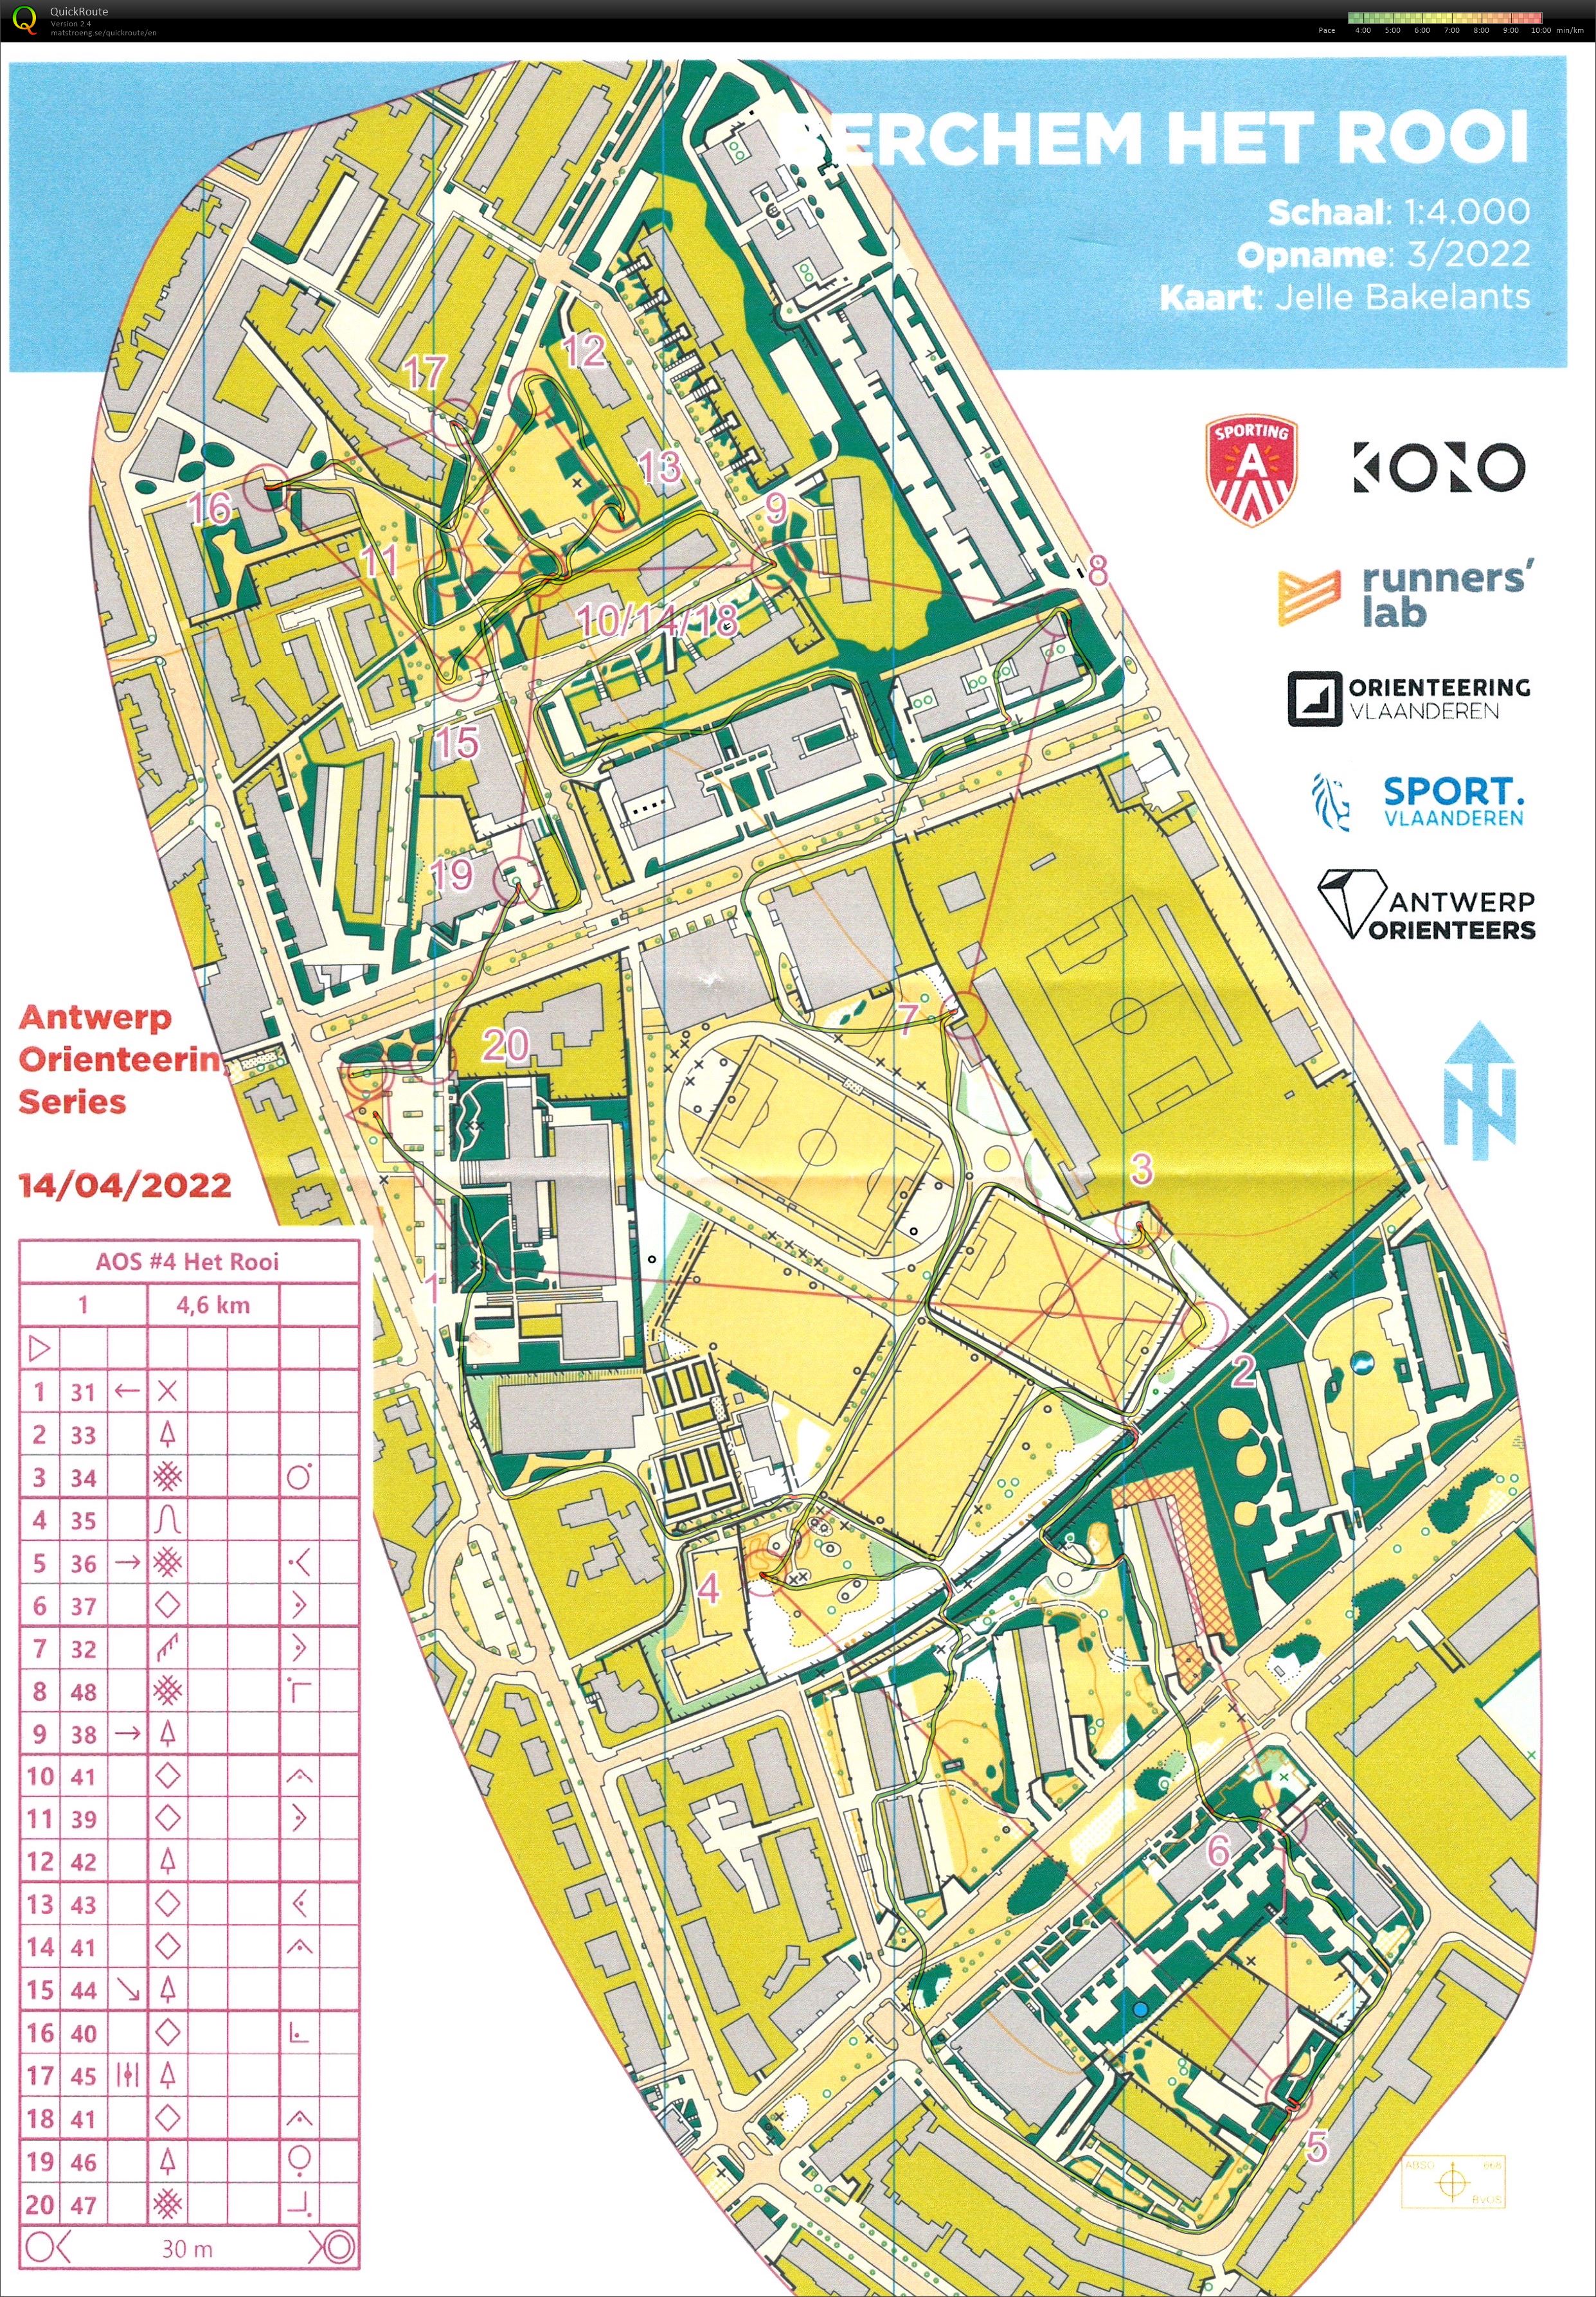 Antwerp Orienteering Series - Berchem - Het Rooi - 5K (14-04-2022)